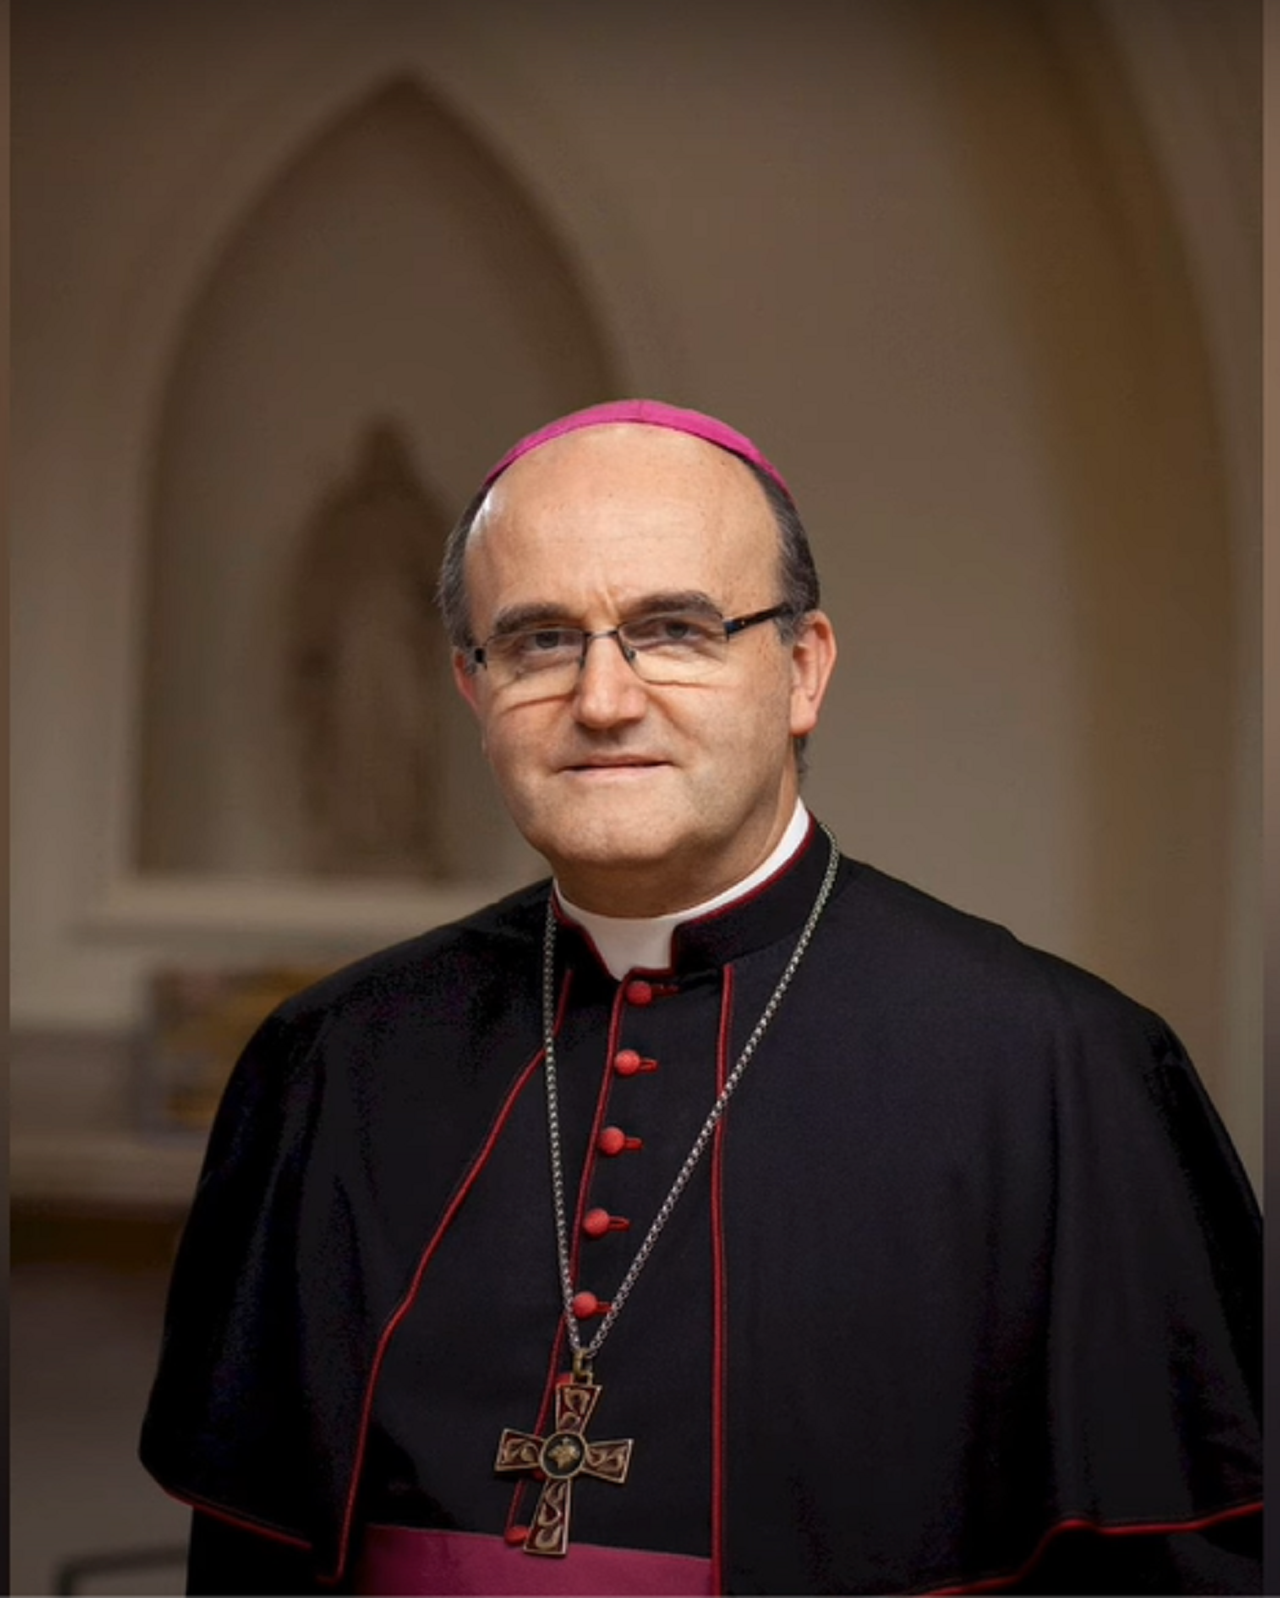 Požehnanie párov rovnakého pohlavia: Hriešnici môžu byť požehnaní, ale nie ich hriech, tvrdí španielsky biskup